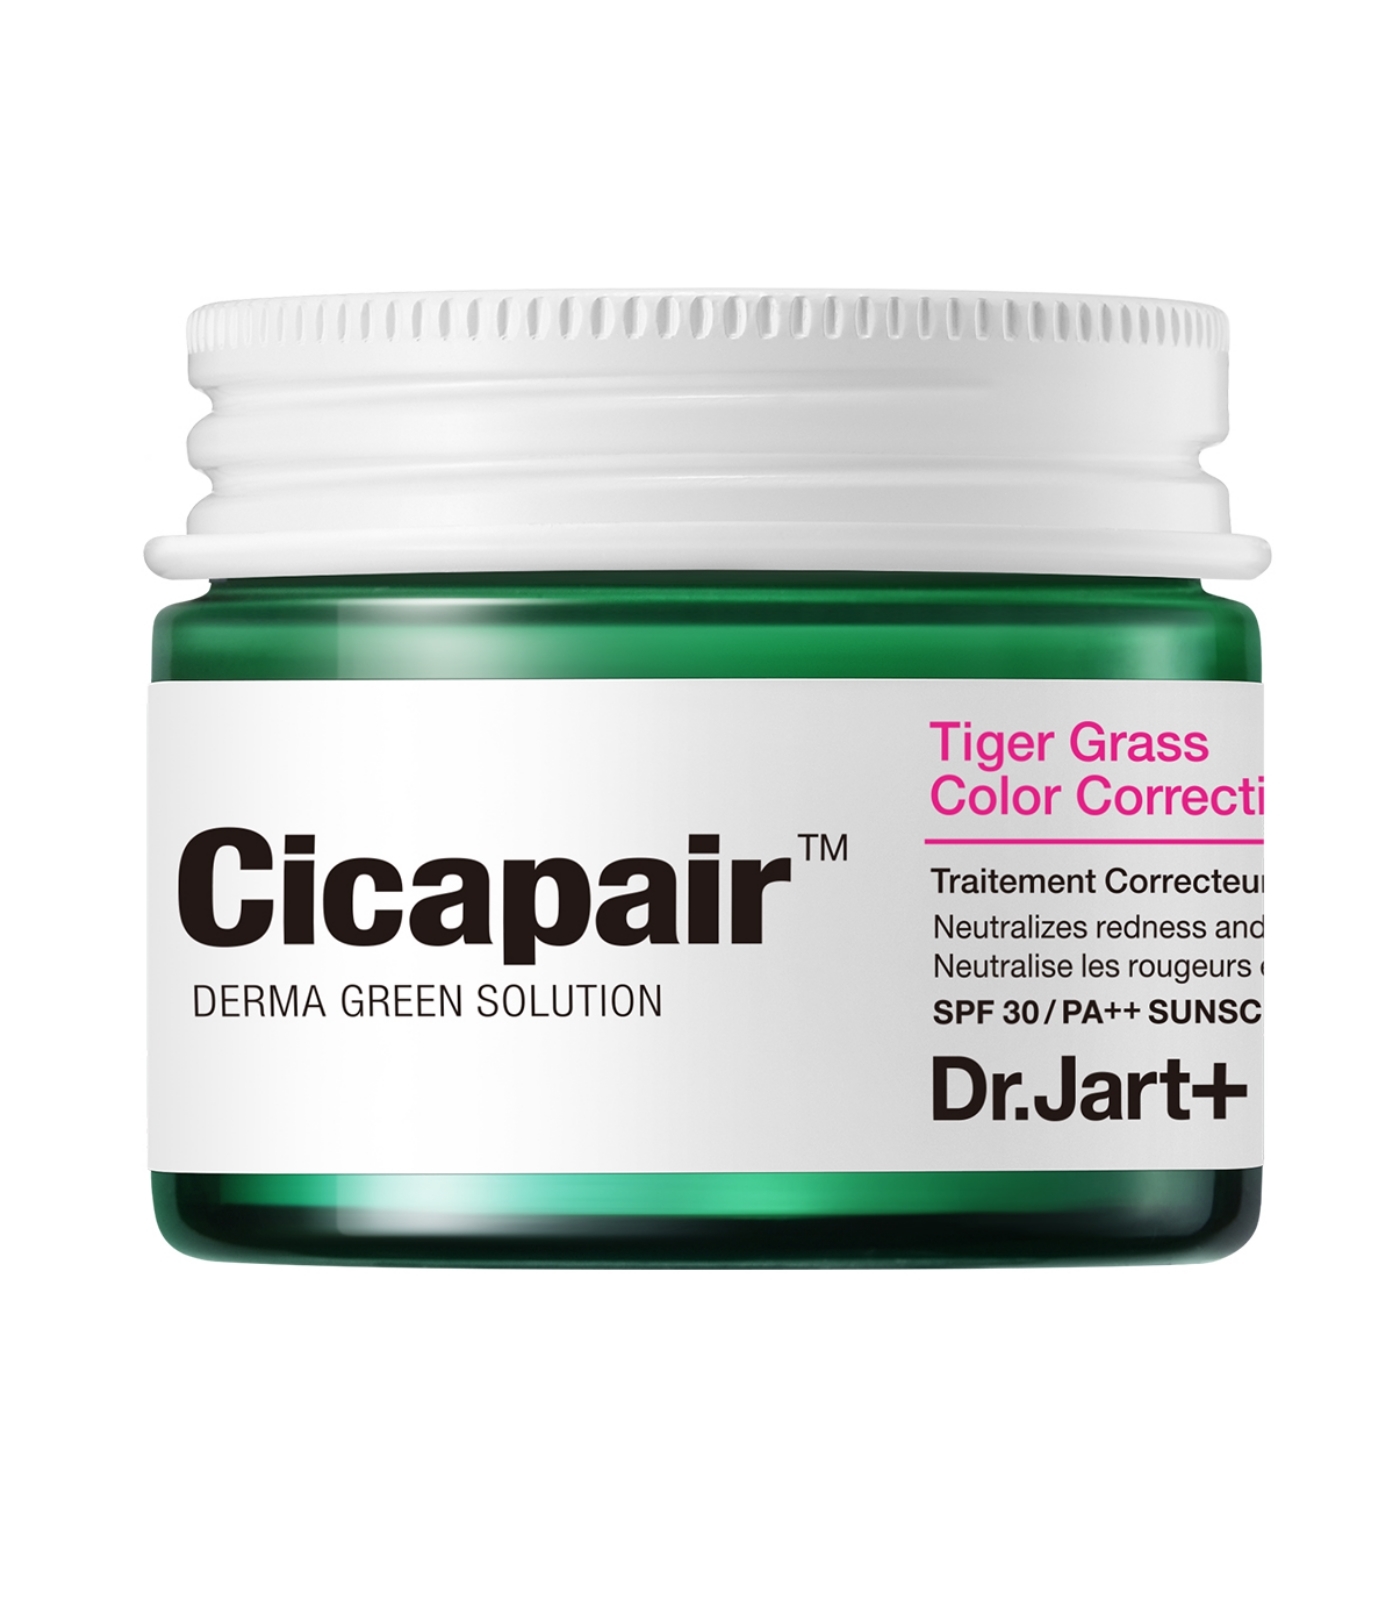 Cicapair Tiger Grass Color Correcting Treatment de Dr.Jart+.